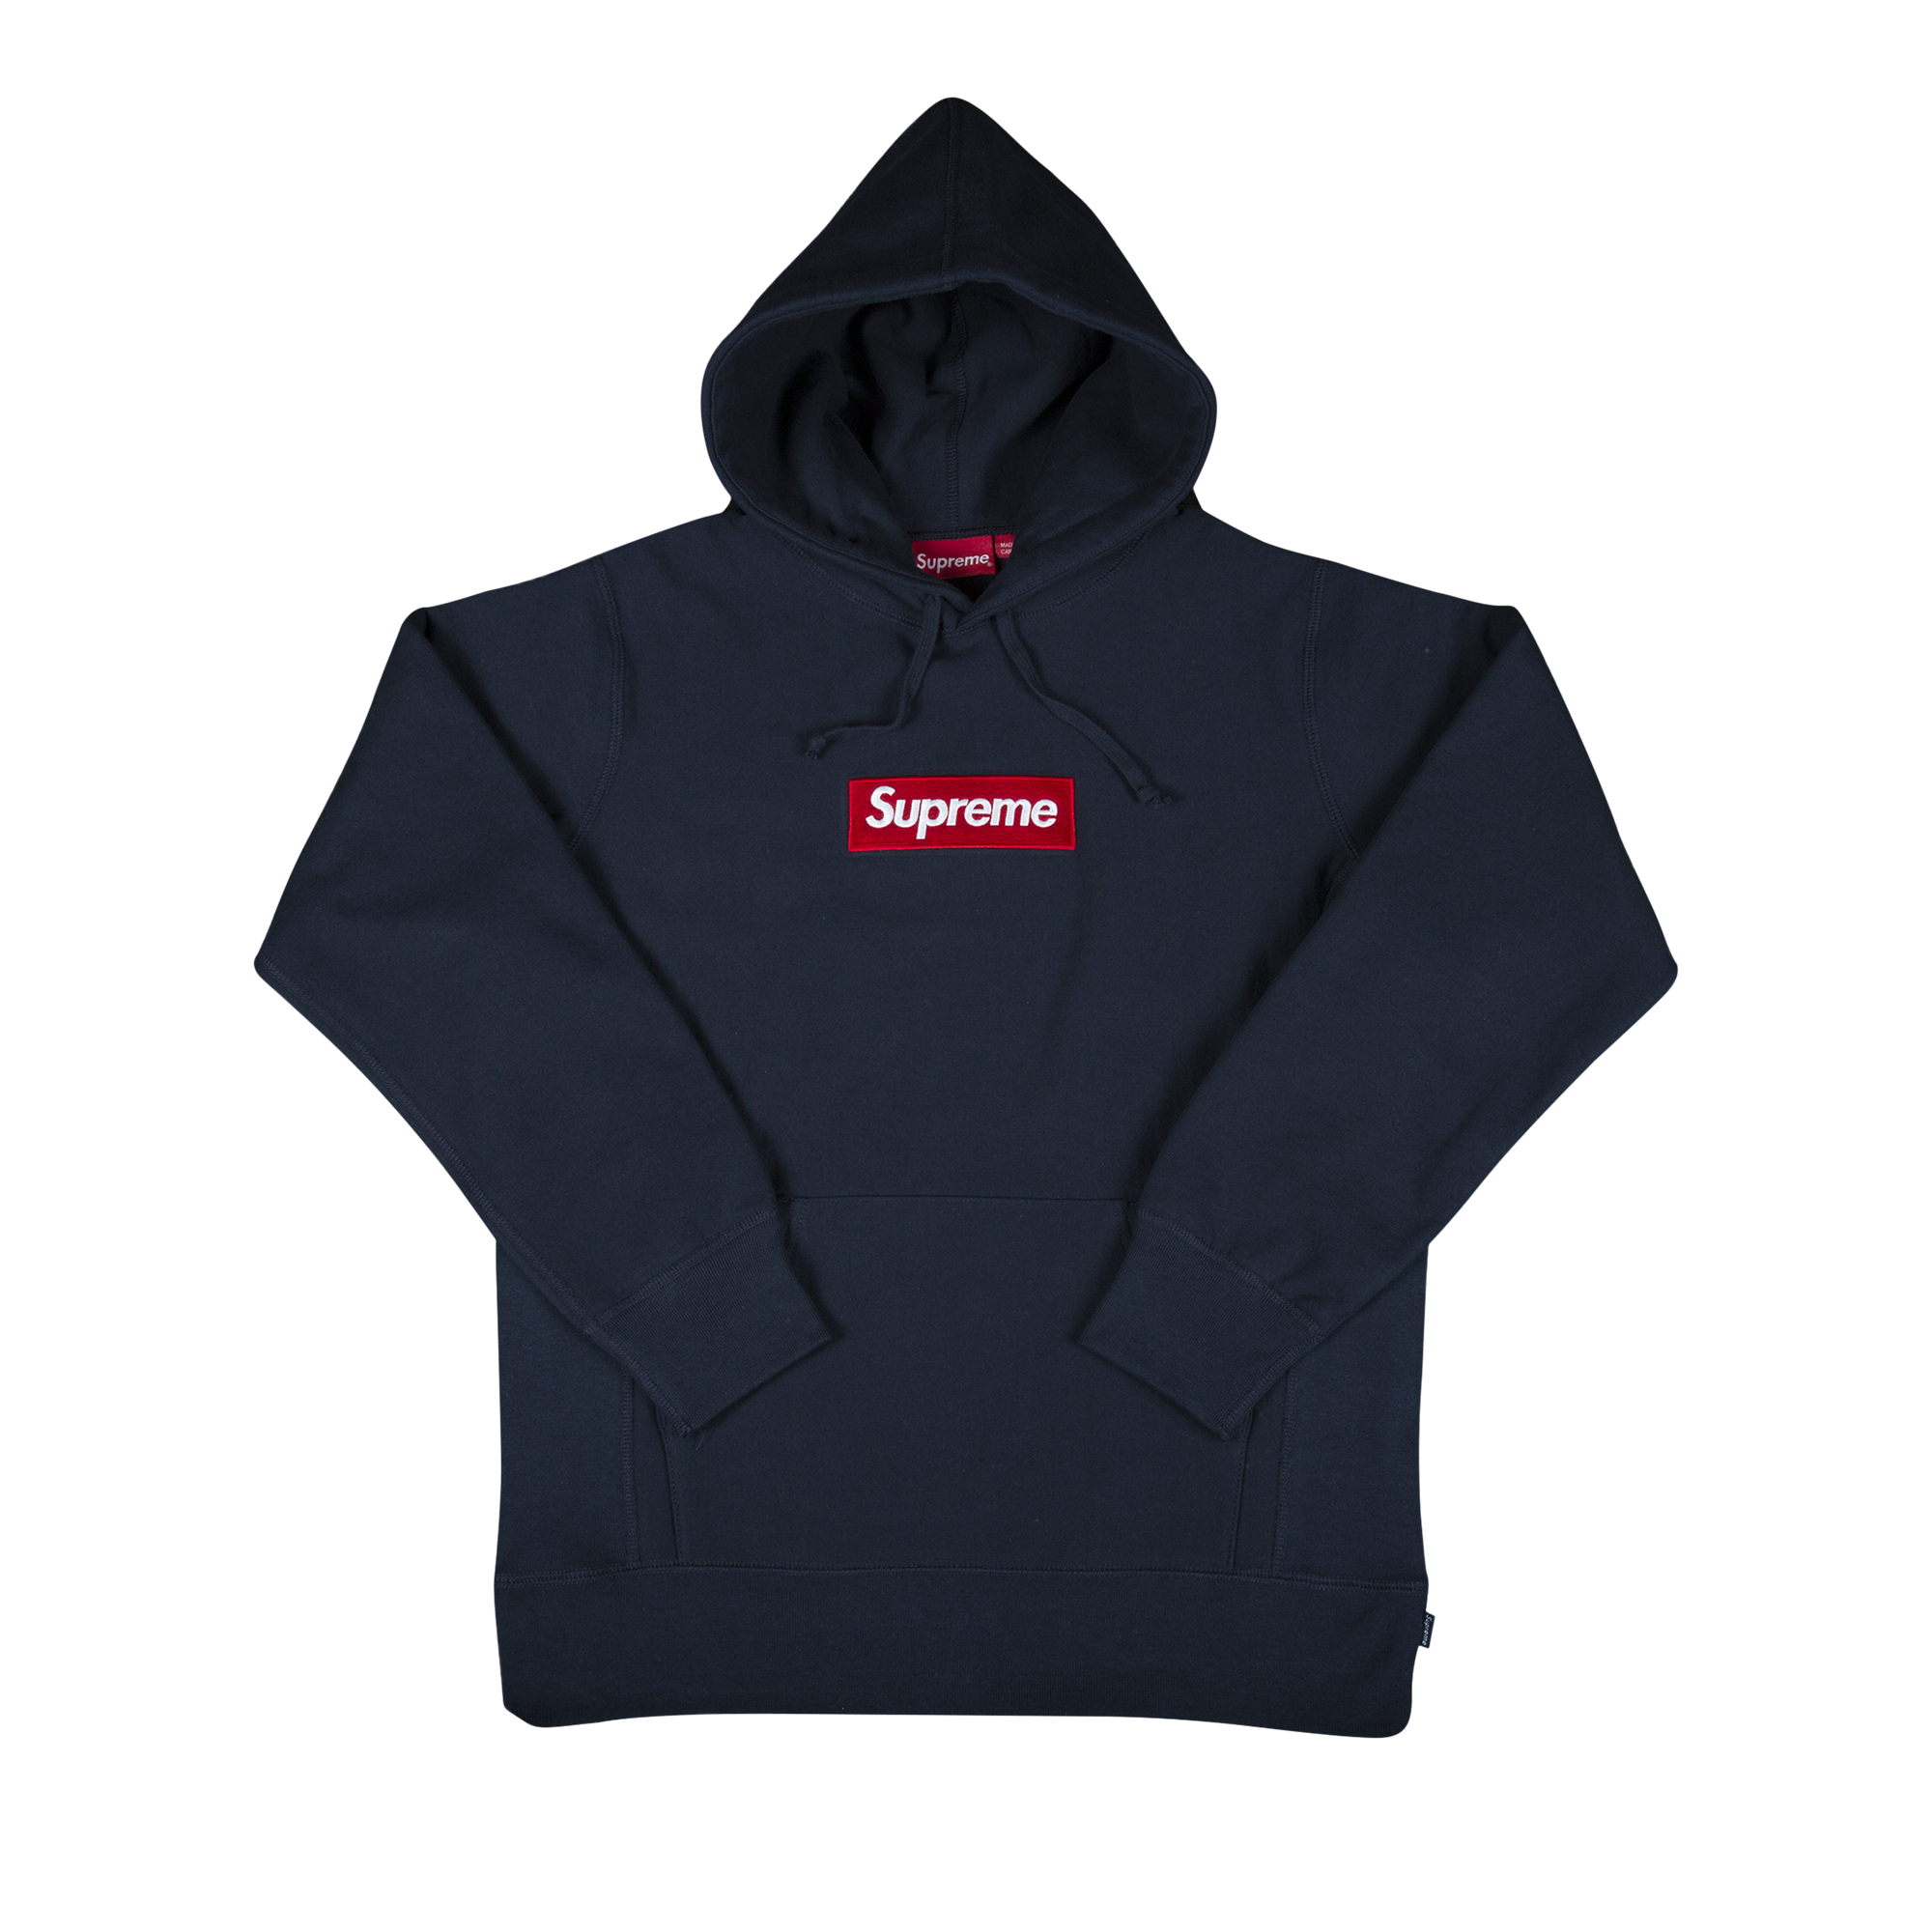 Buy Supreme Box Logo Hooded Sweatshirt 'Navy'   FWSW6 NAVY   GOAT